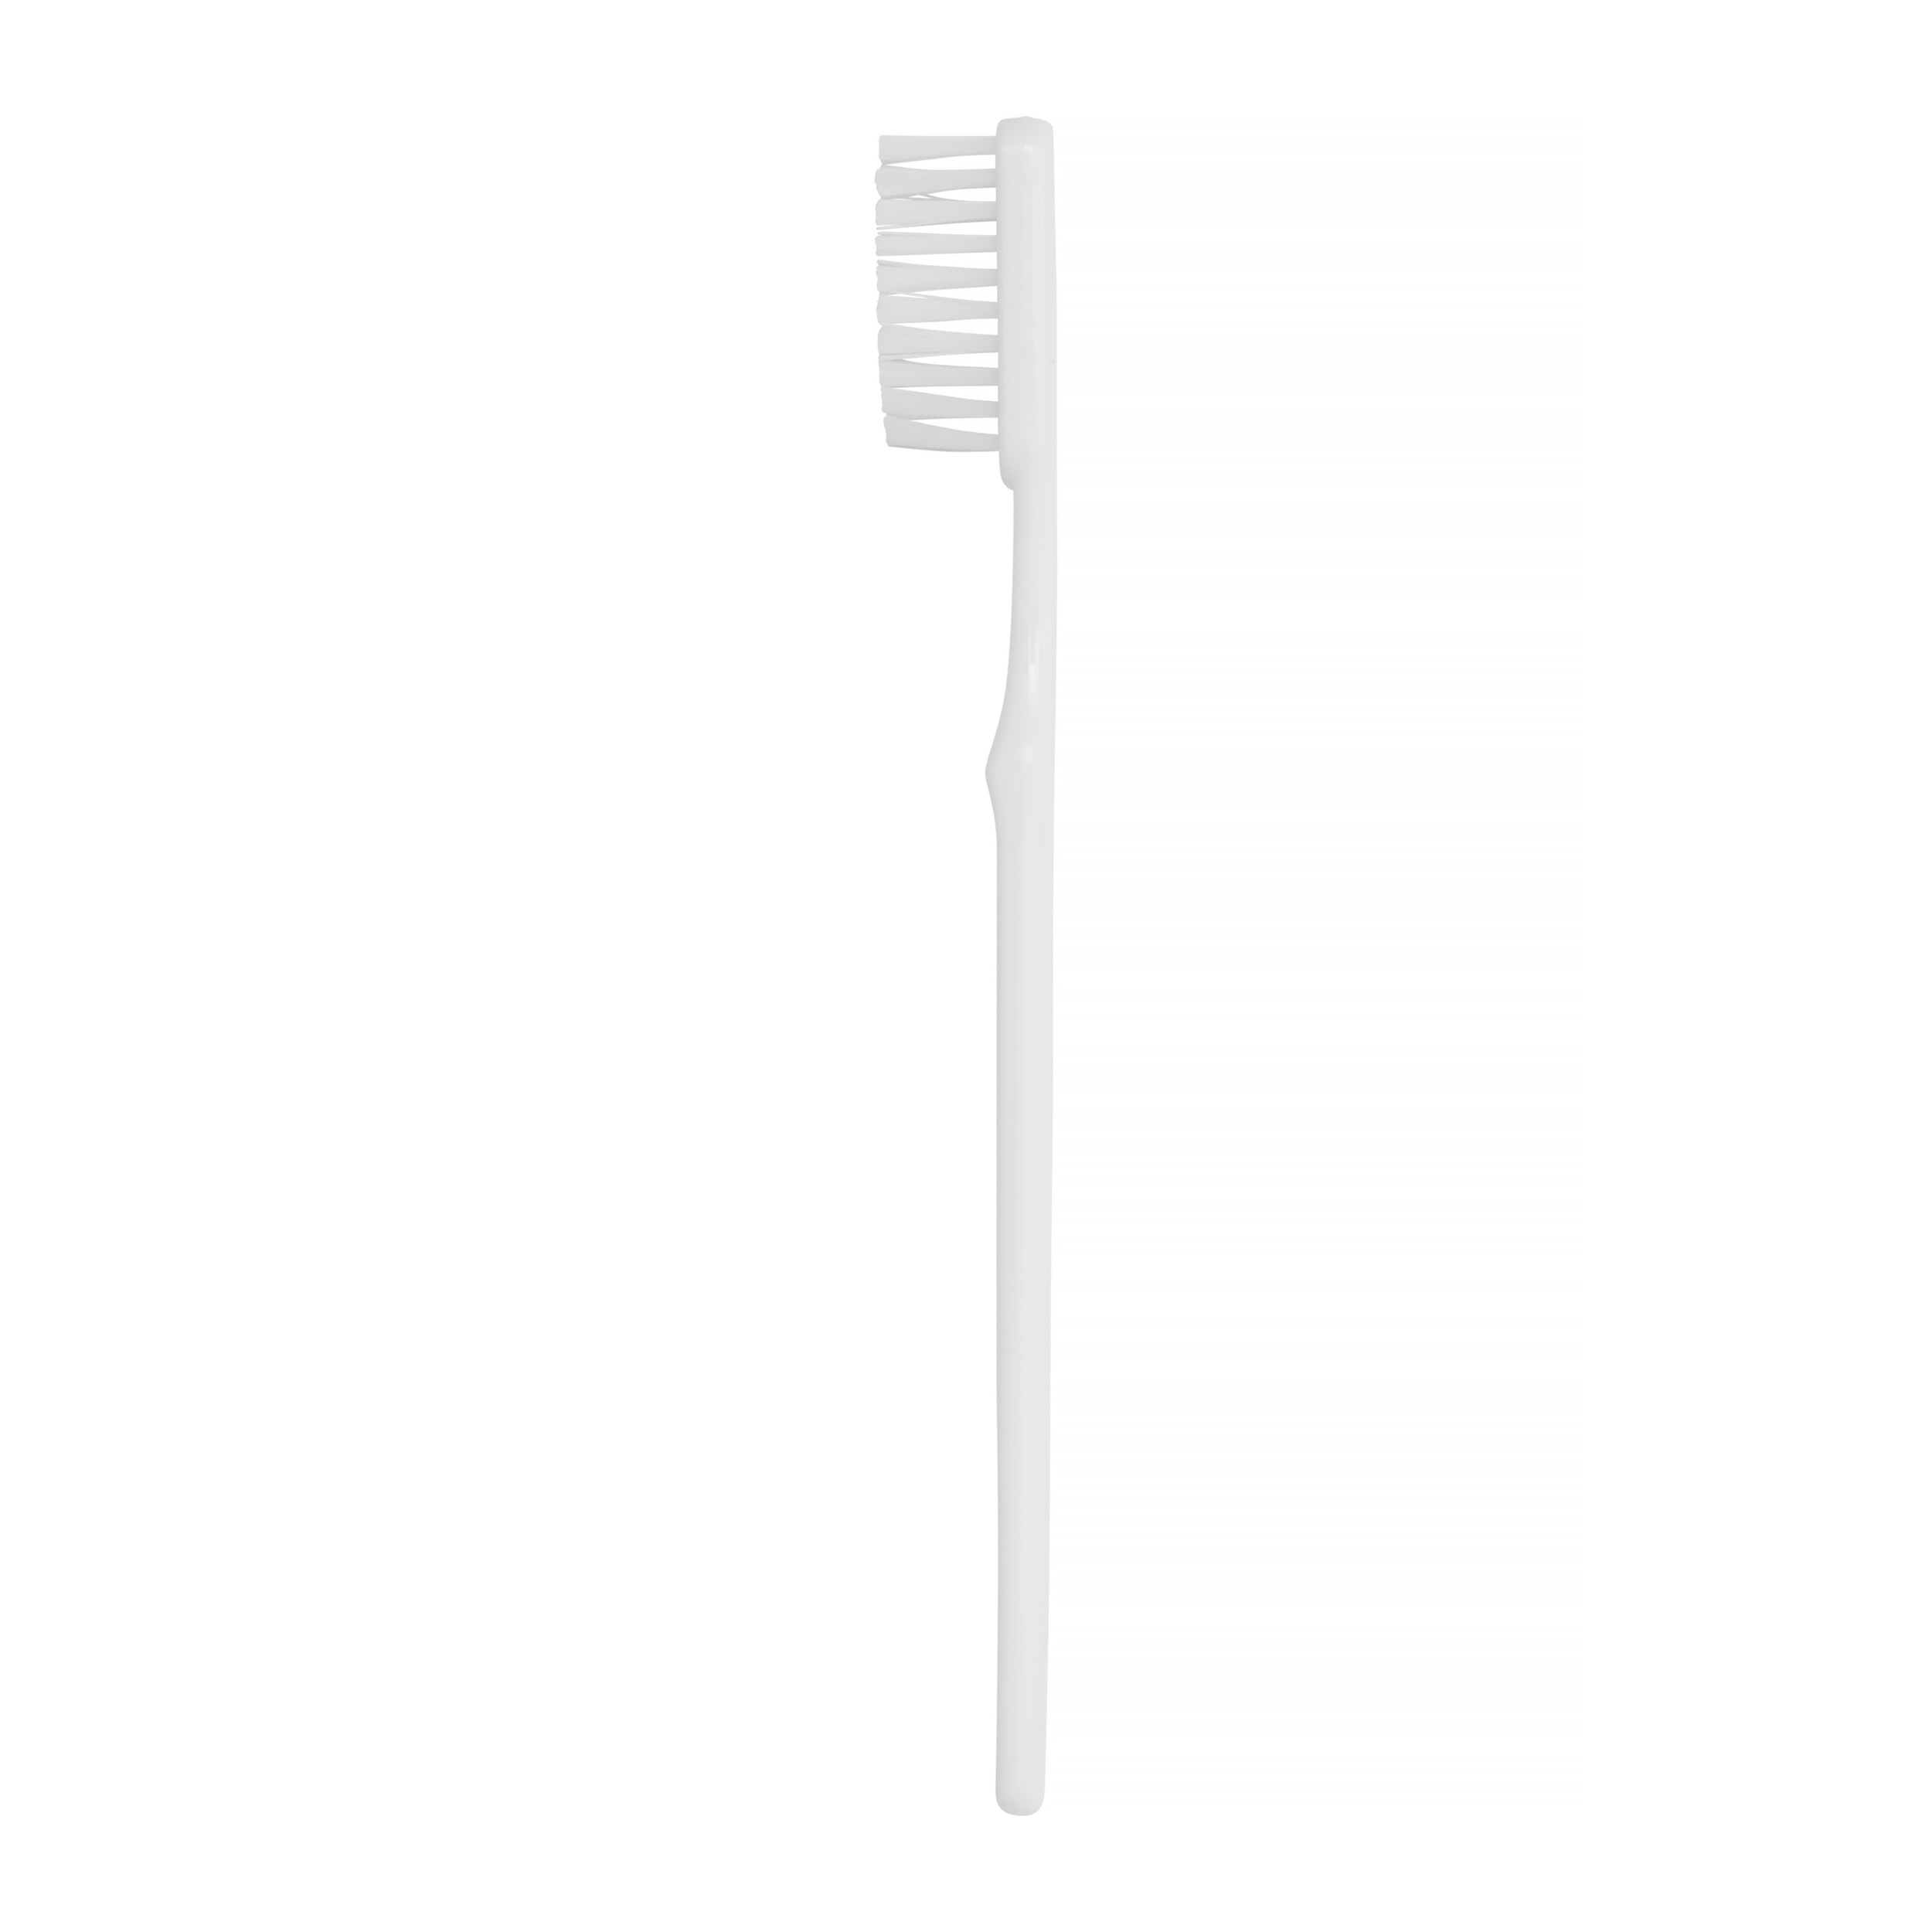 Toothbrush single use, White